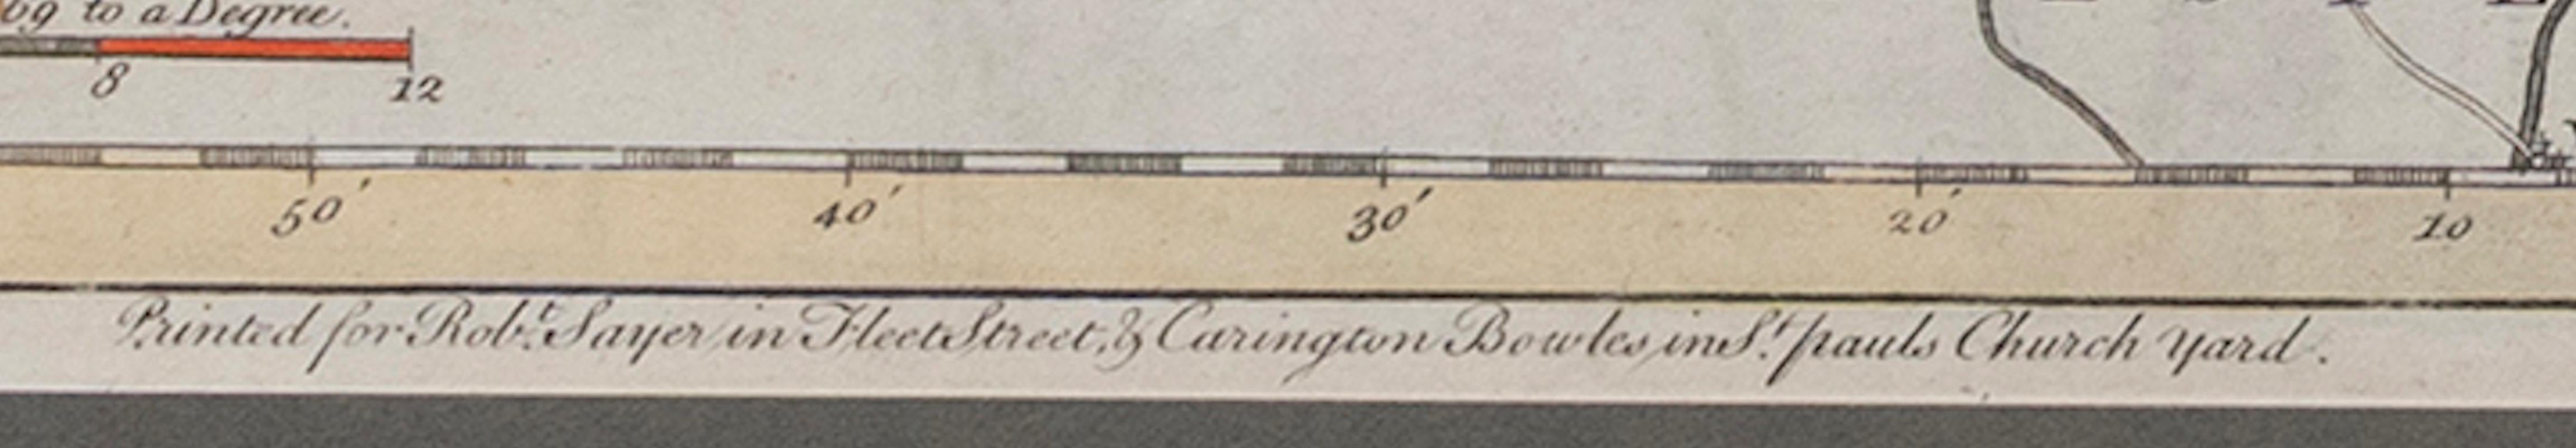 Carte du Shropshire Joseph Ellis Robert Sayer Carington Bowles Encadré 39cm 15